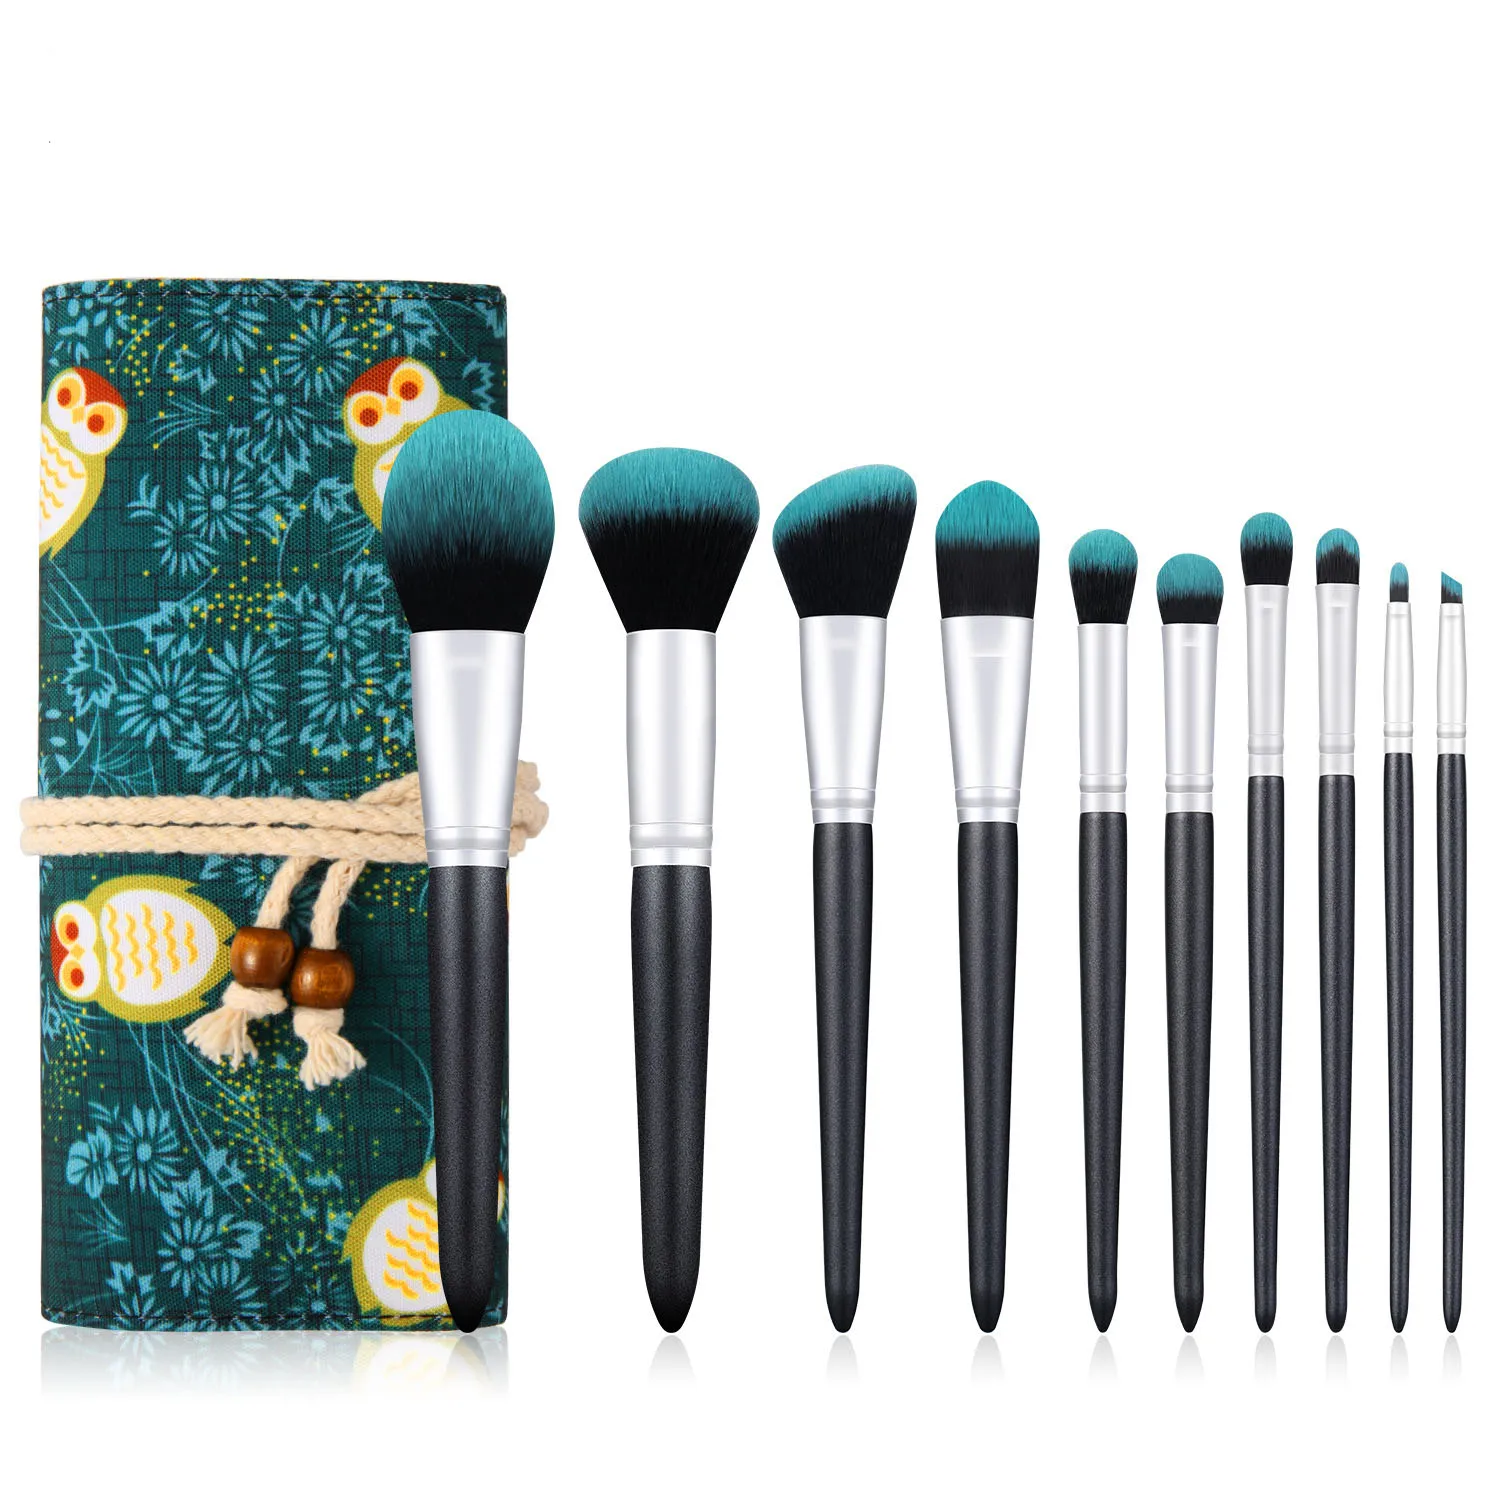 

Makeup Brushes 10pcs Premium Synthetic Kabuki Foundation Brush Blending Face Powder Blush Concealer Eye Shadows Makeup Brush Set